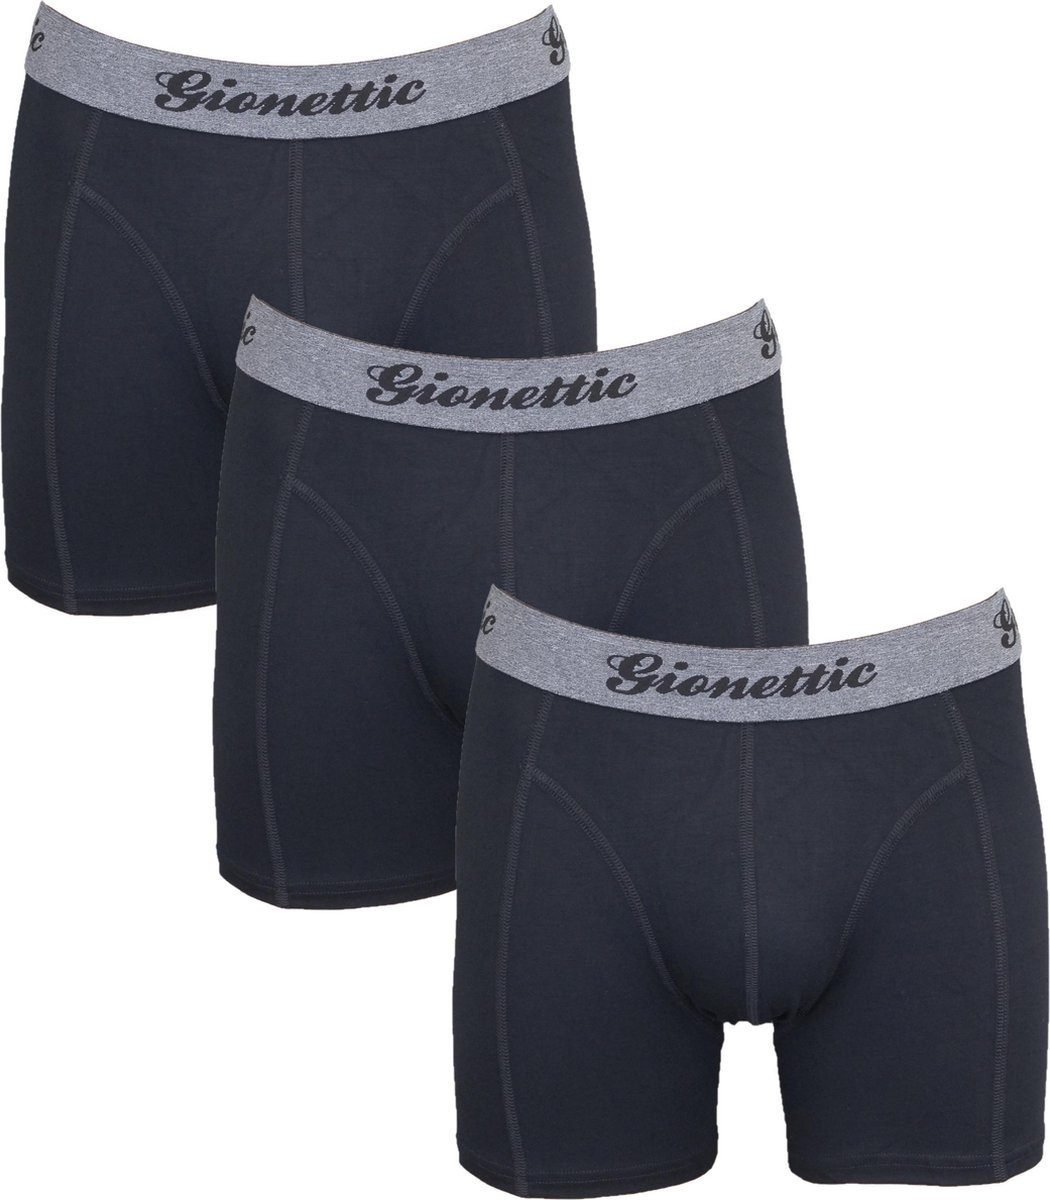 Gionettic 3-Pack Heren boxershorts Bamboe Zwart Maat S